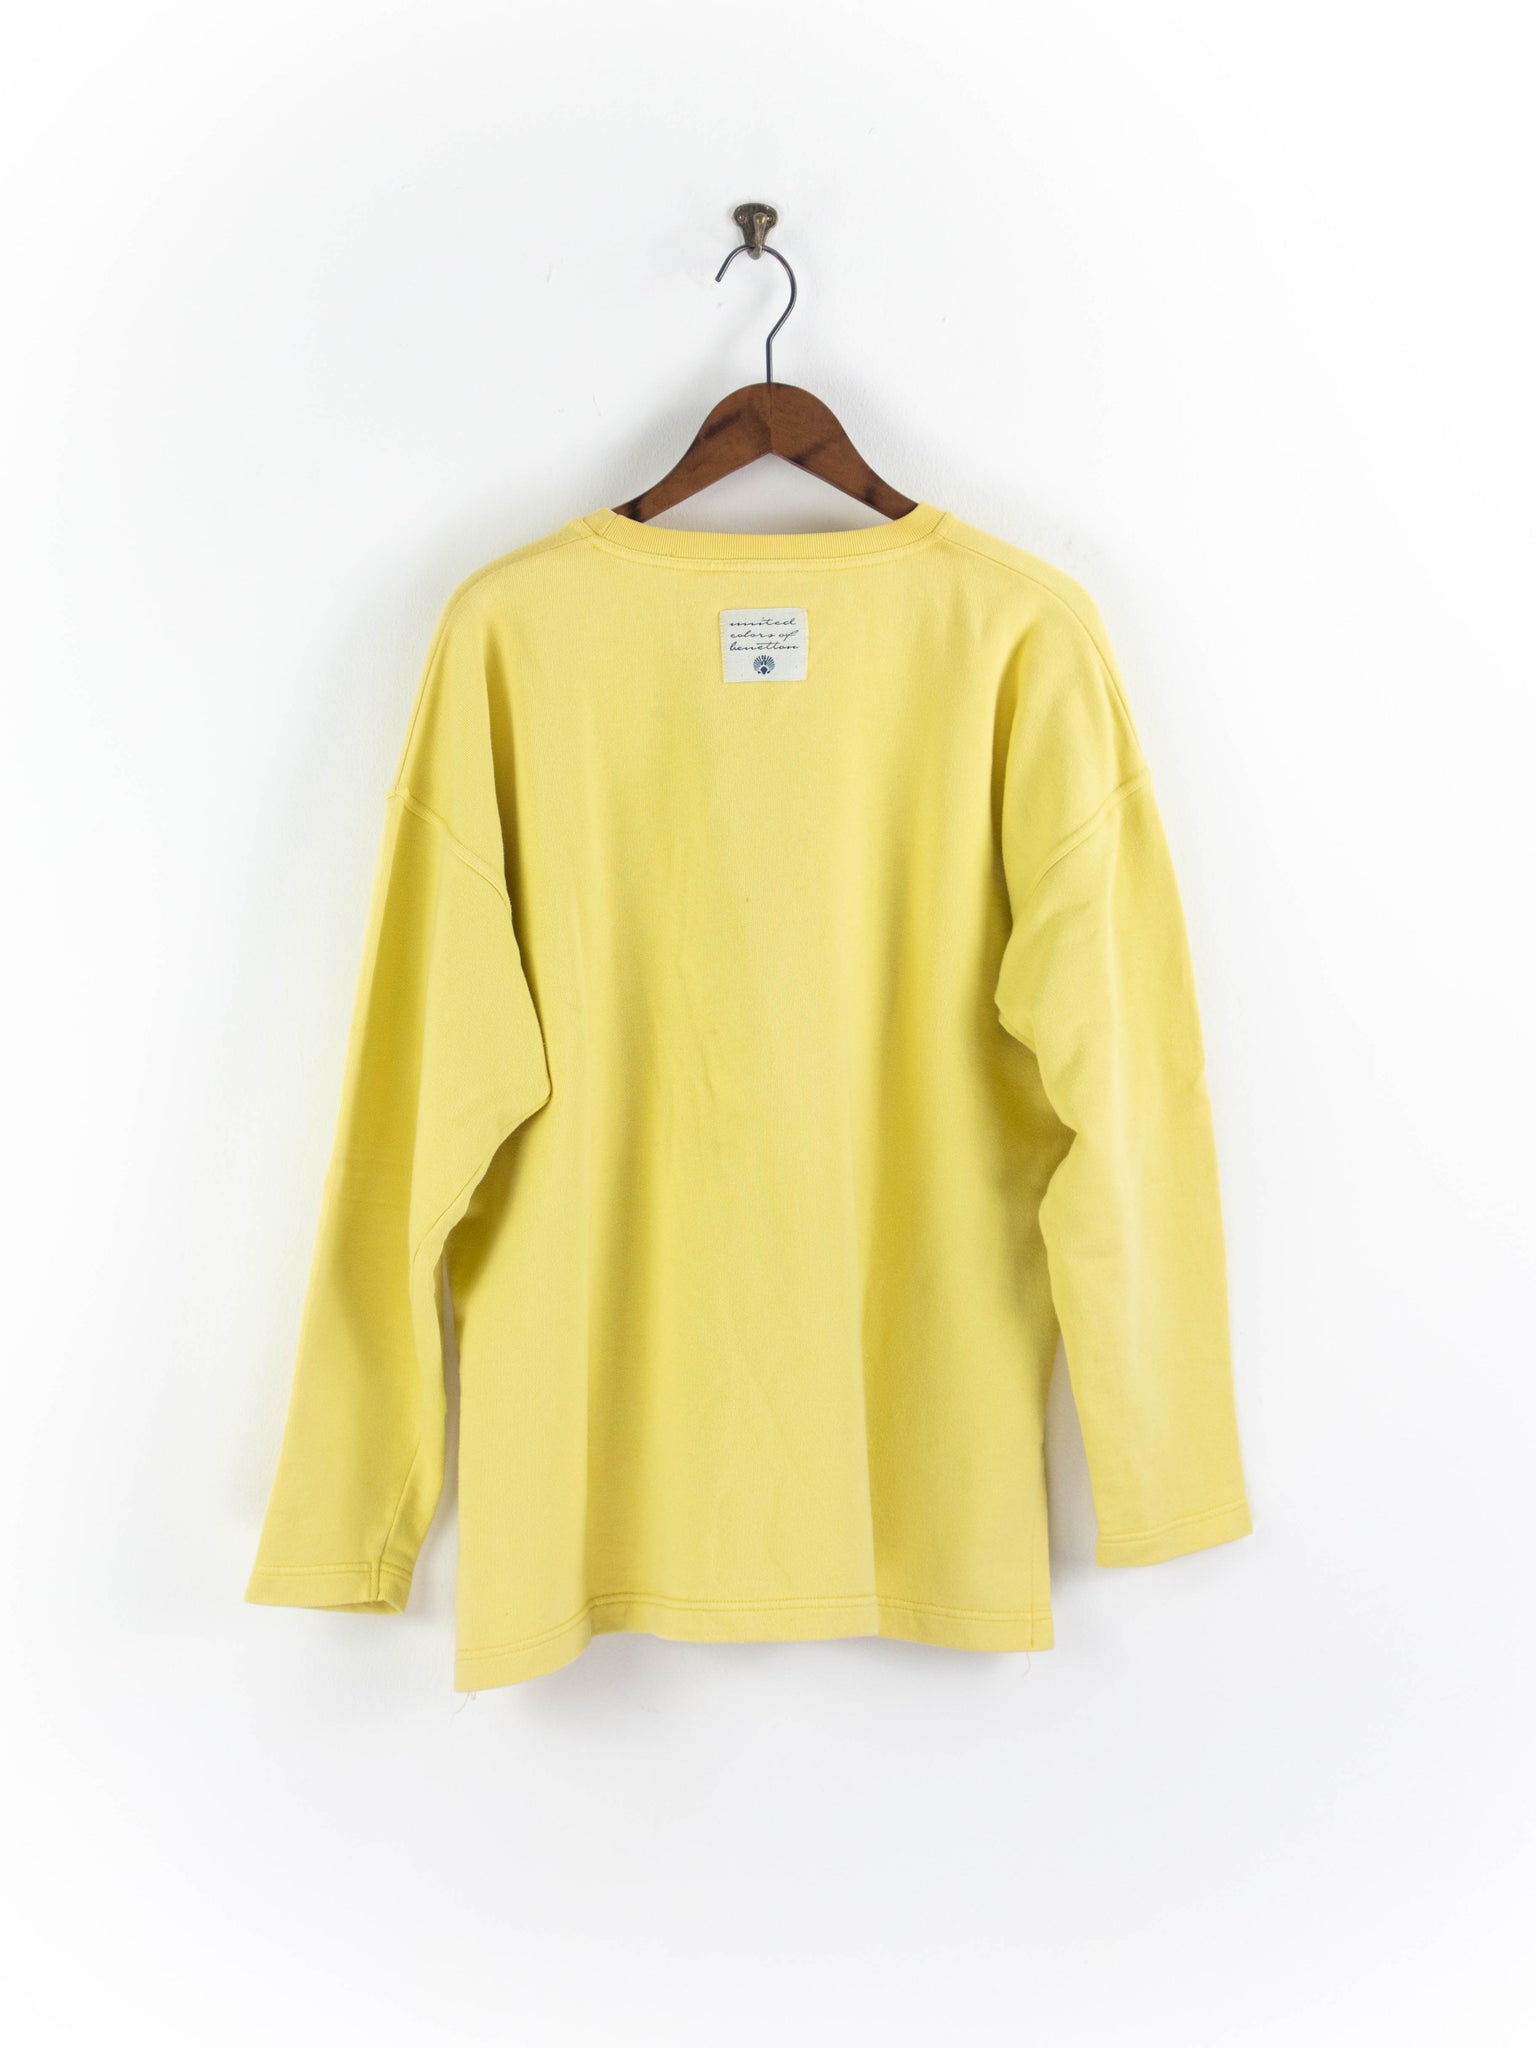 Knalliger Sweater L/XL